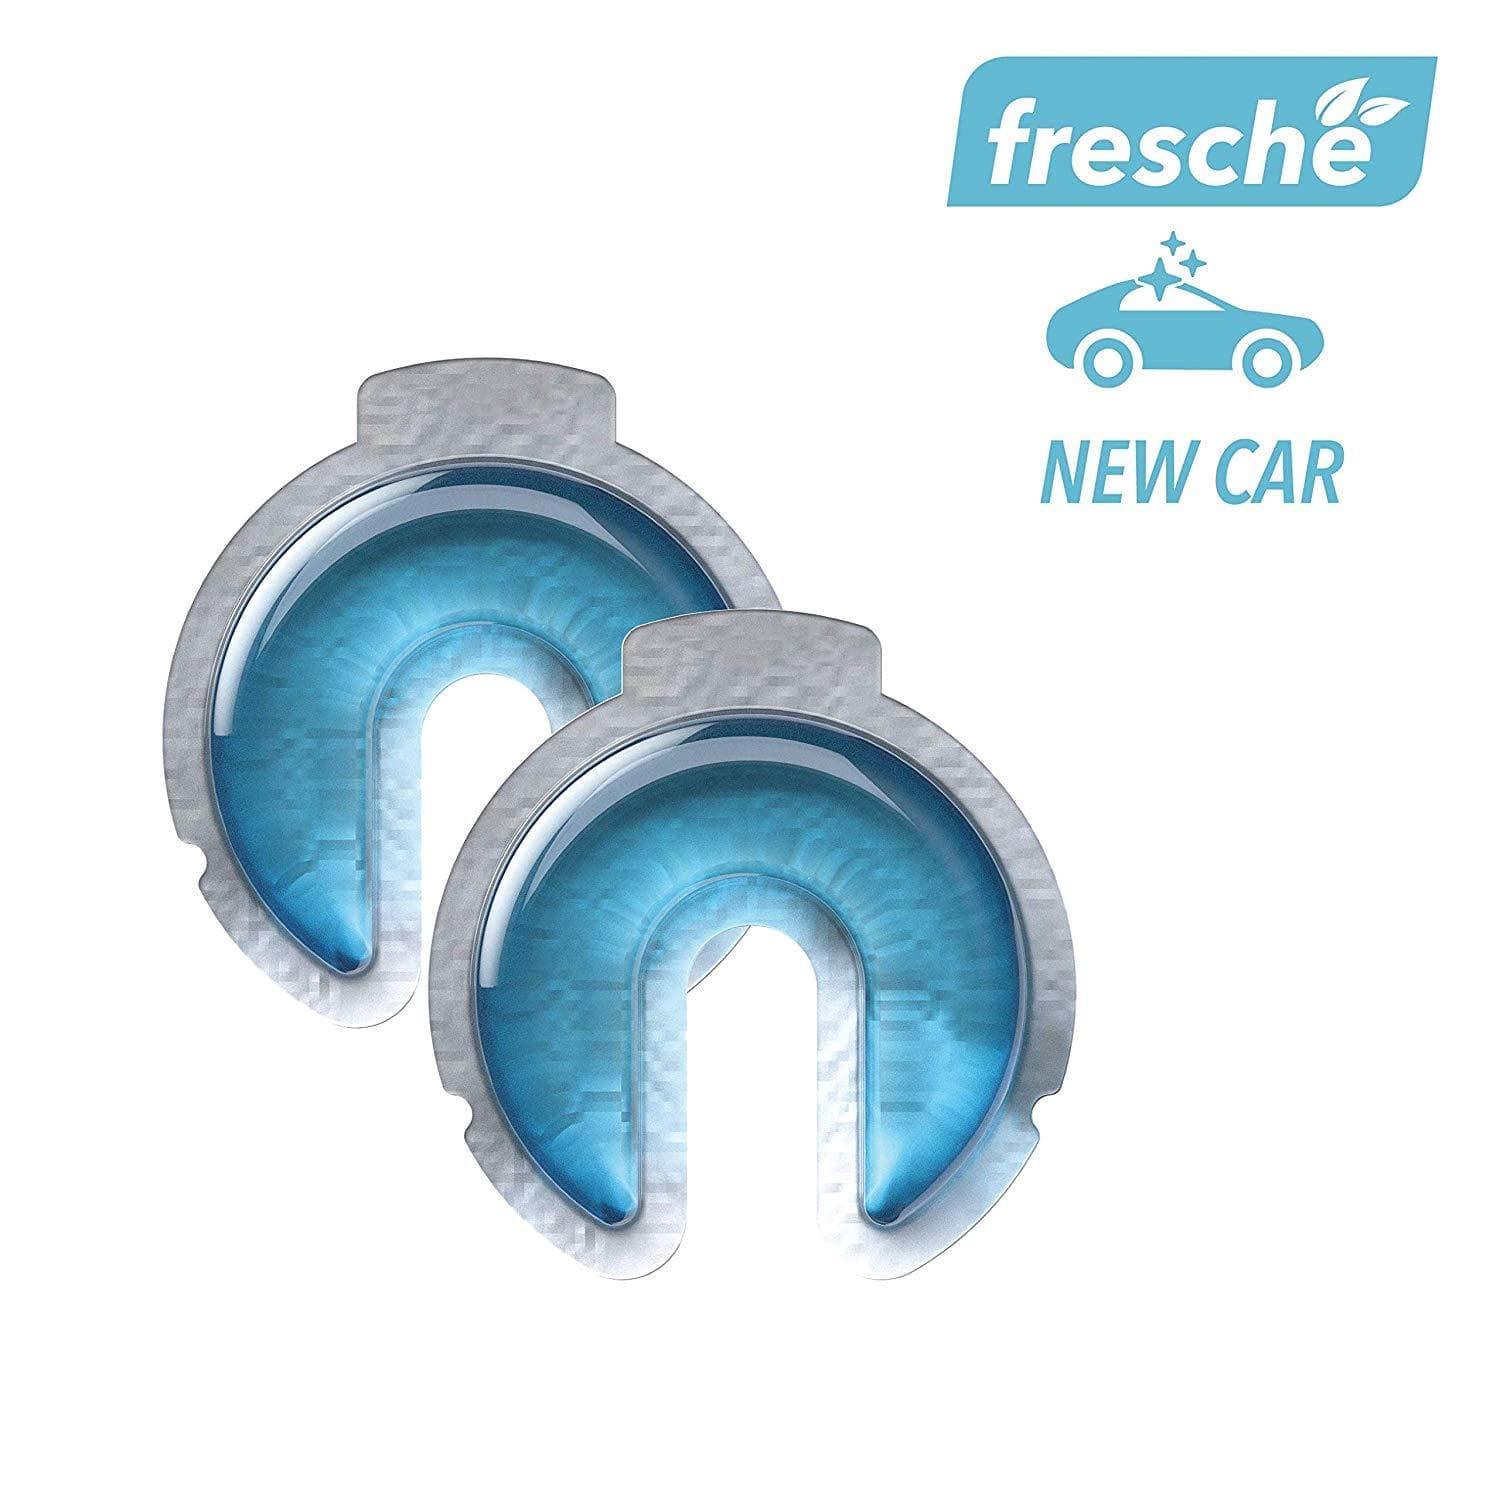 جهاز معطر الهواء لحامل الهاتف Scosche - Air Freshener Refill Cartridges for Fresche Mounts - سيارة جديدة